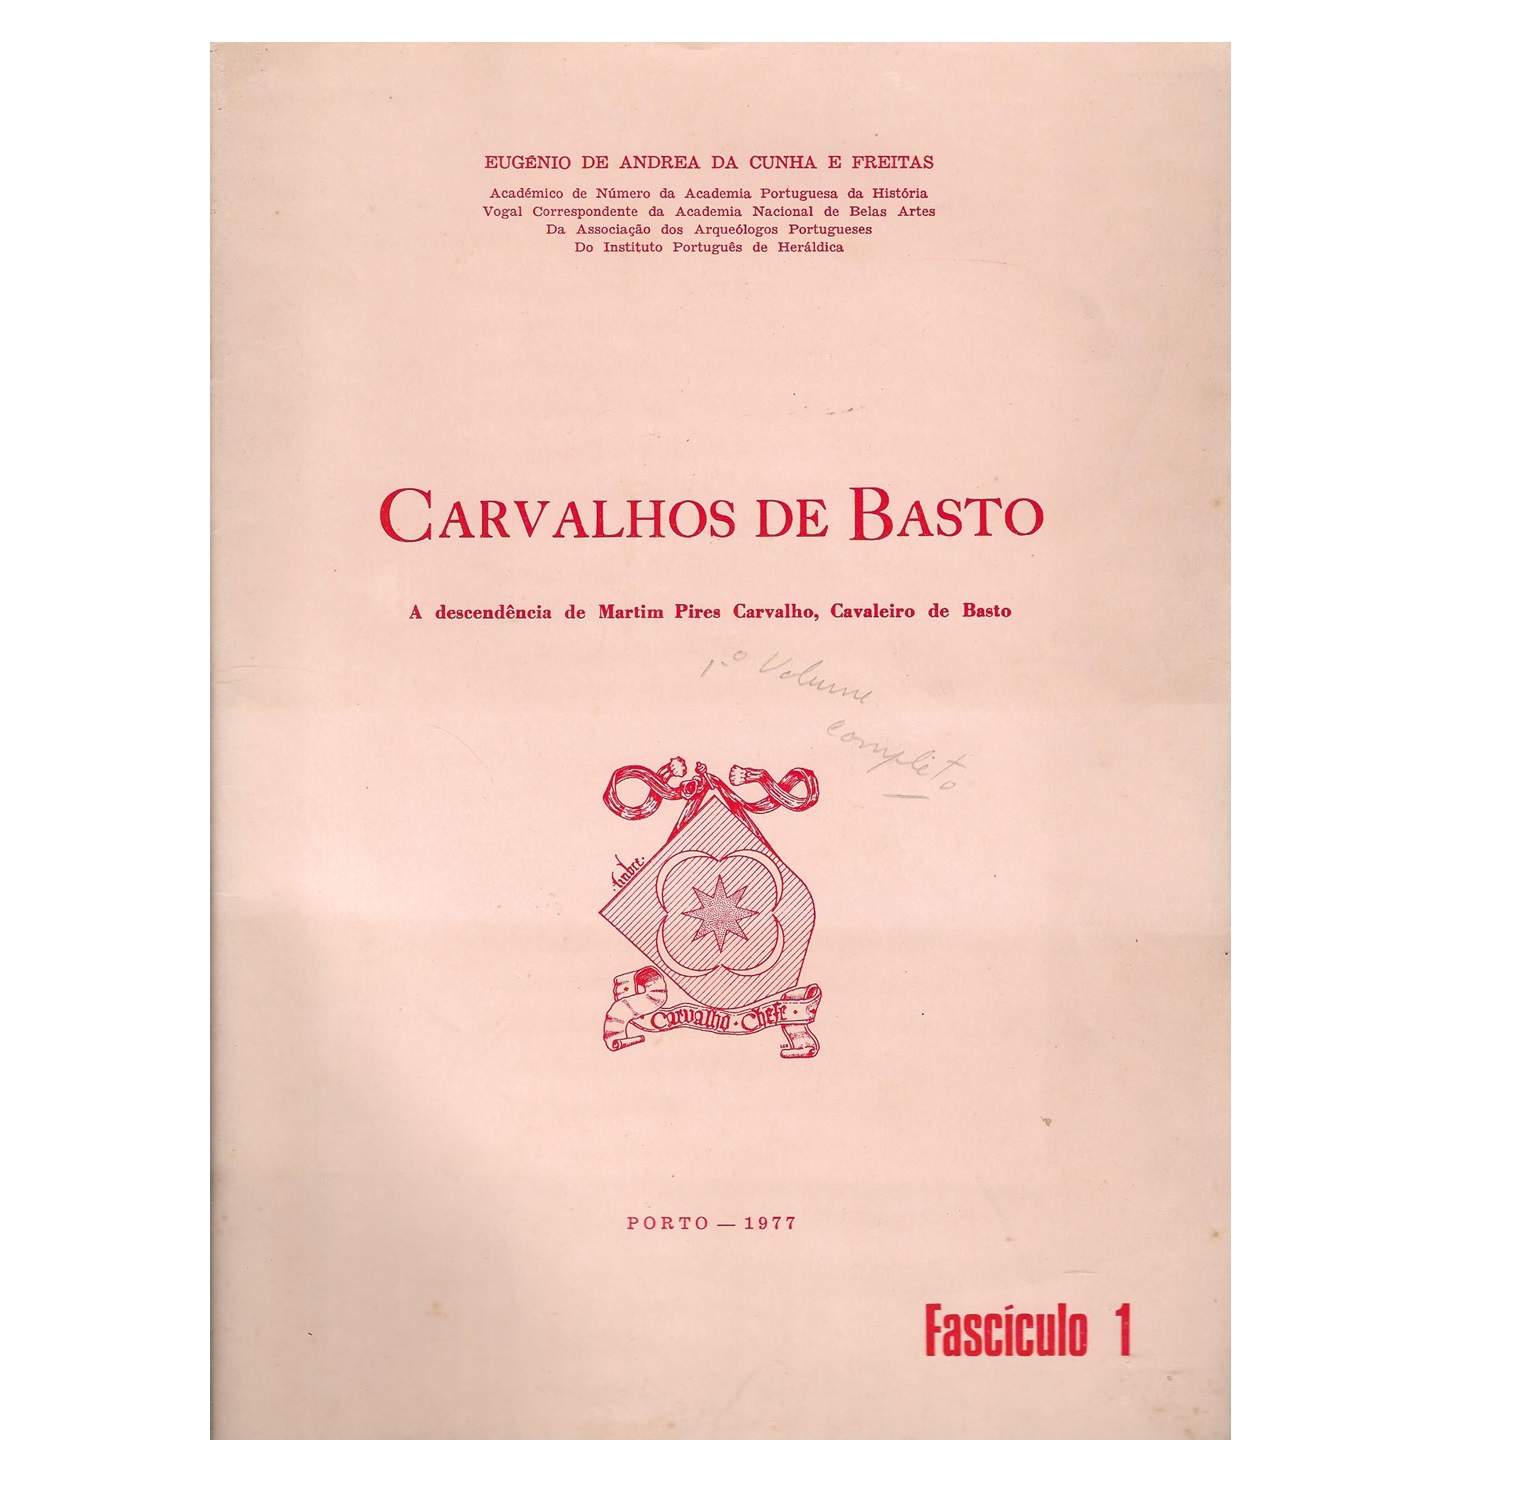  CARVALHOS DE BASTO. VOL. 1